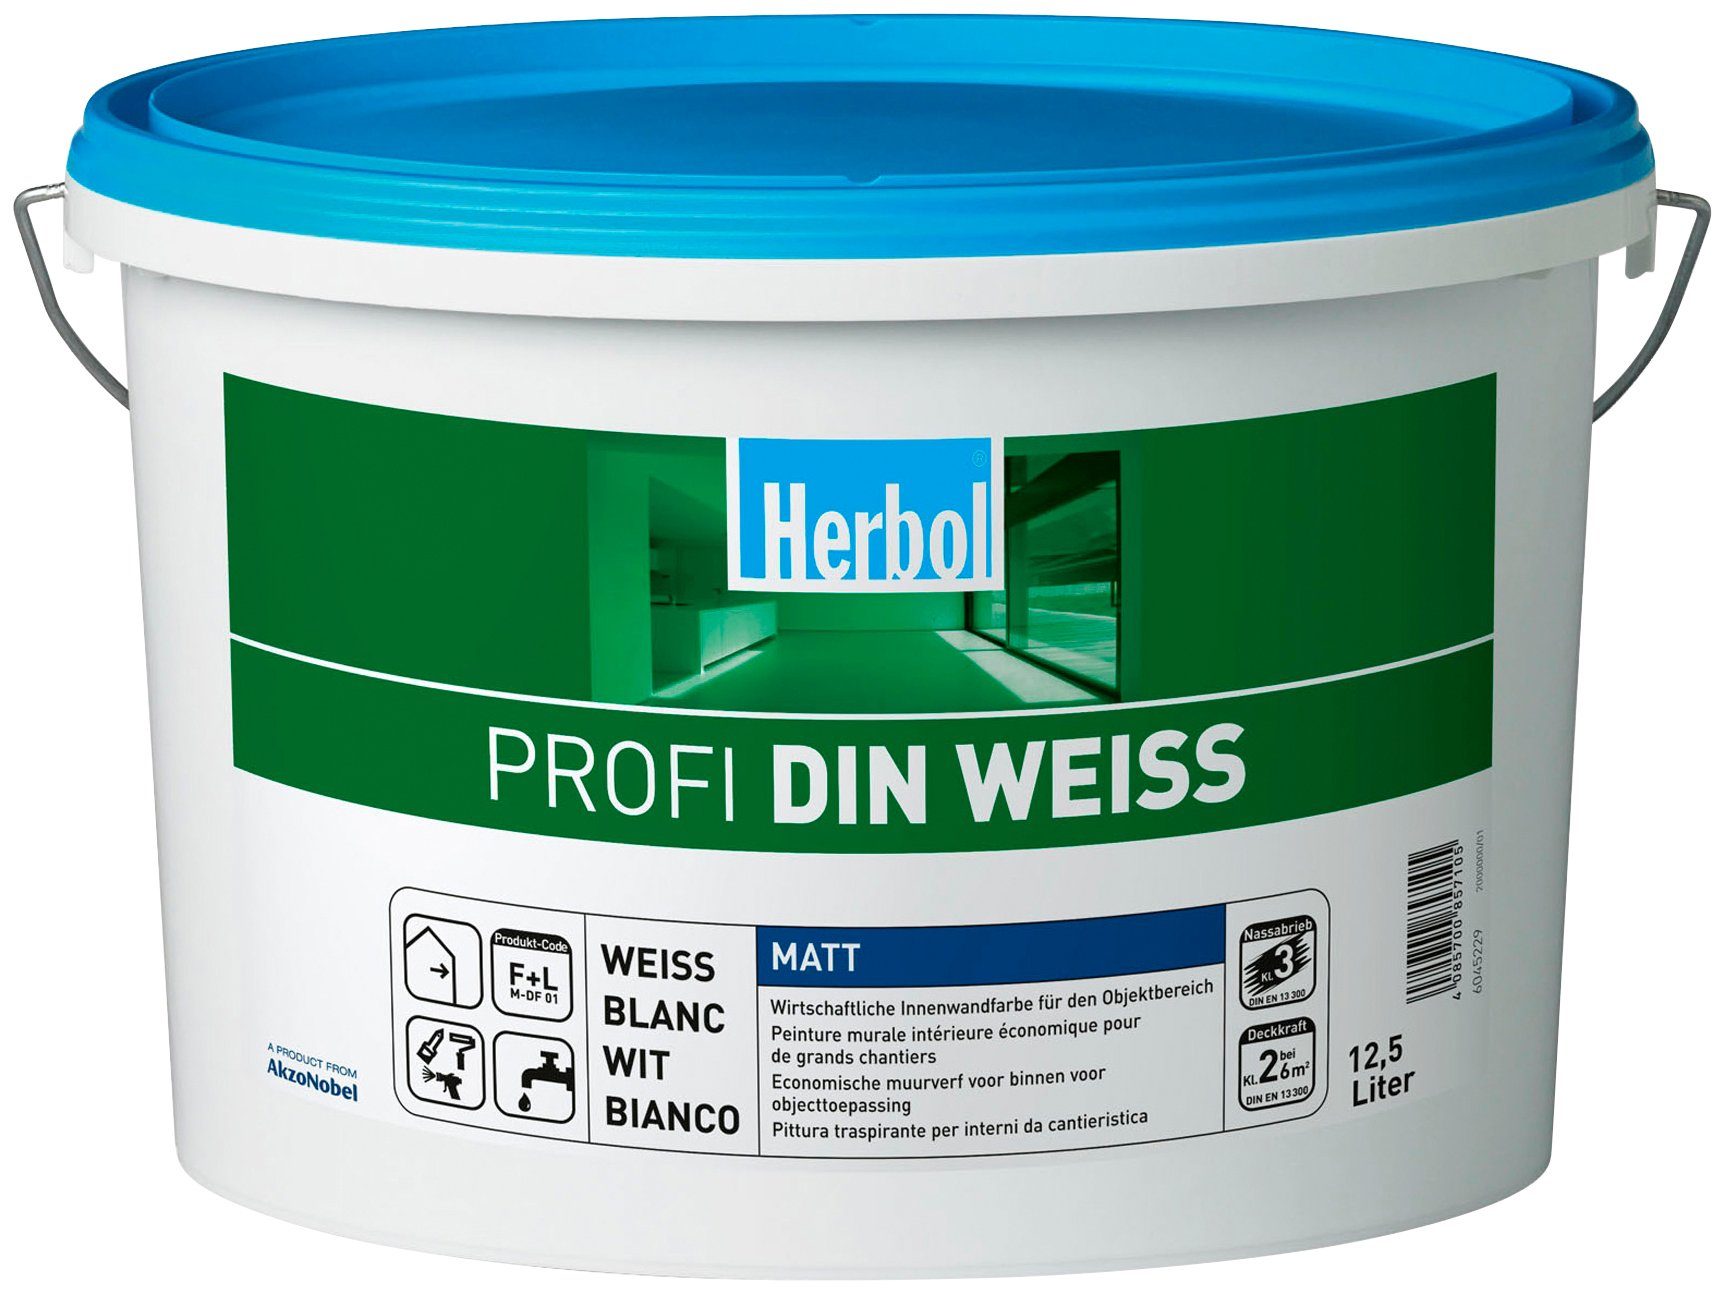 Herbol Wand- und Deckenfarbe Profi DIN weiß, 12,5 Liter, weiß